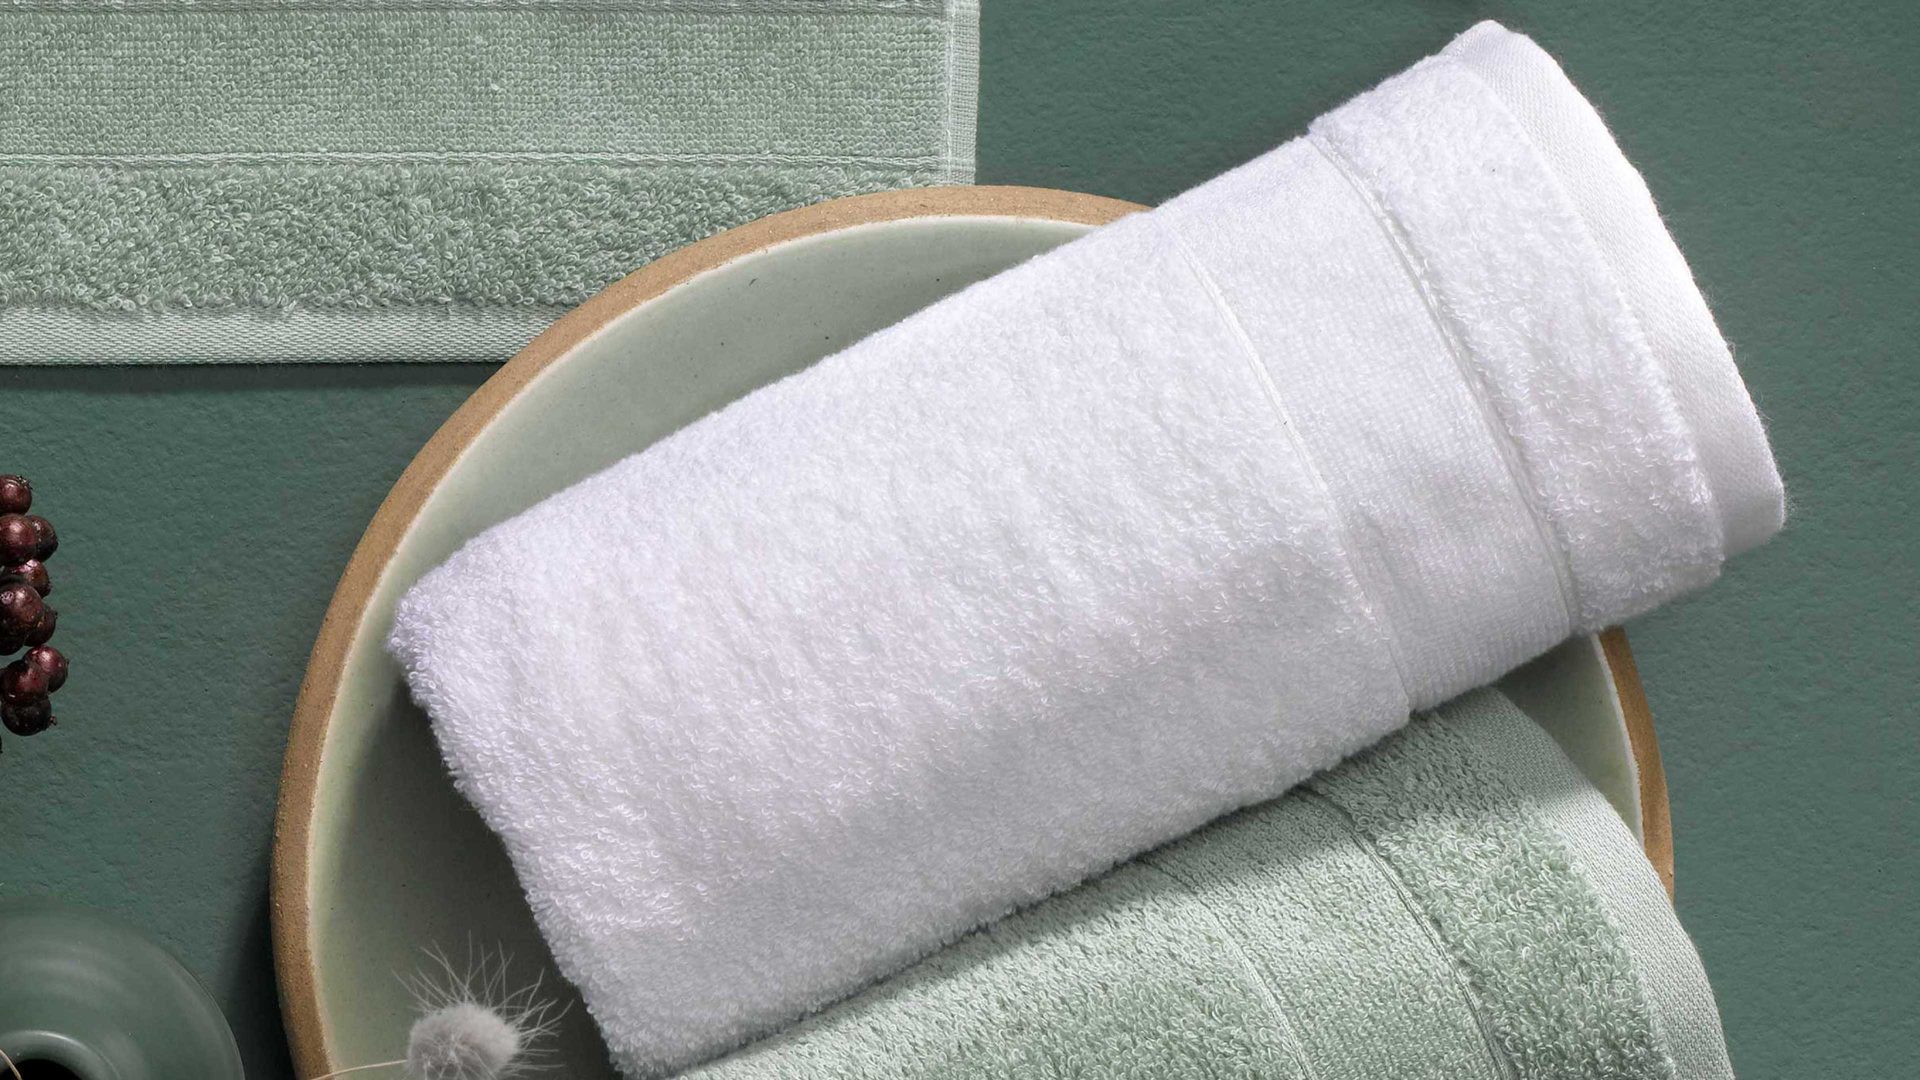 Handtuch-Set Vossen aus Naturfaser in Weiß VOSSEN® Handtuch Scarlett weiße Baumwolle ca. 50 x 100 cm - 2er Set